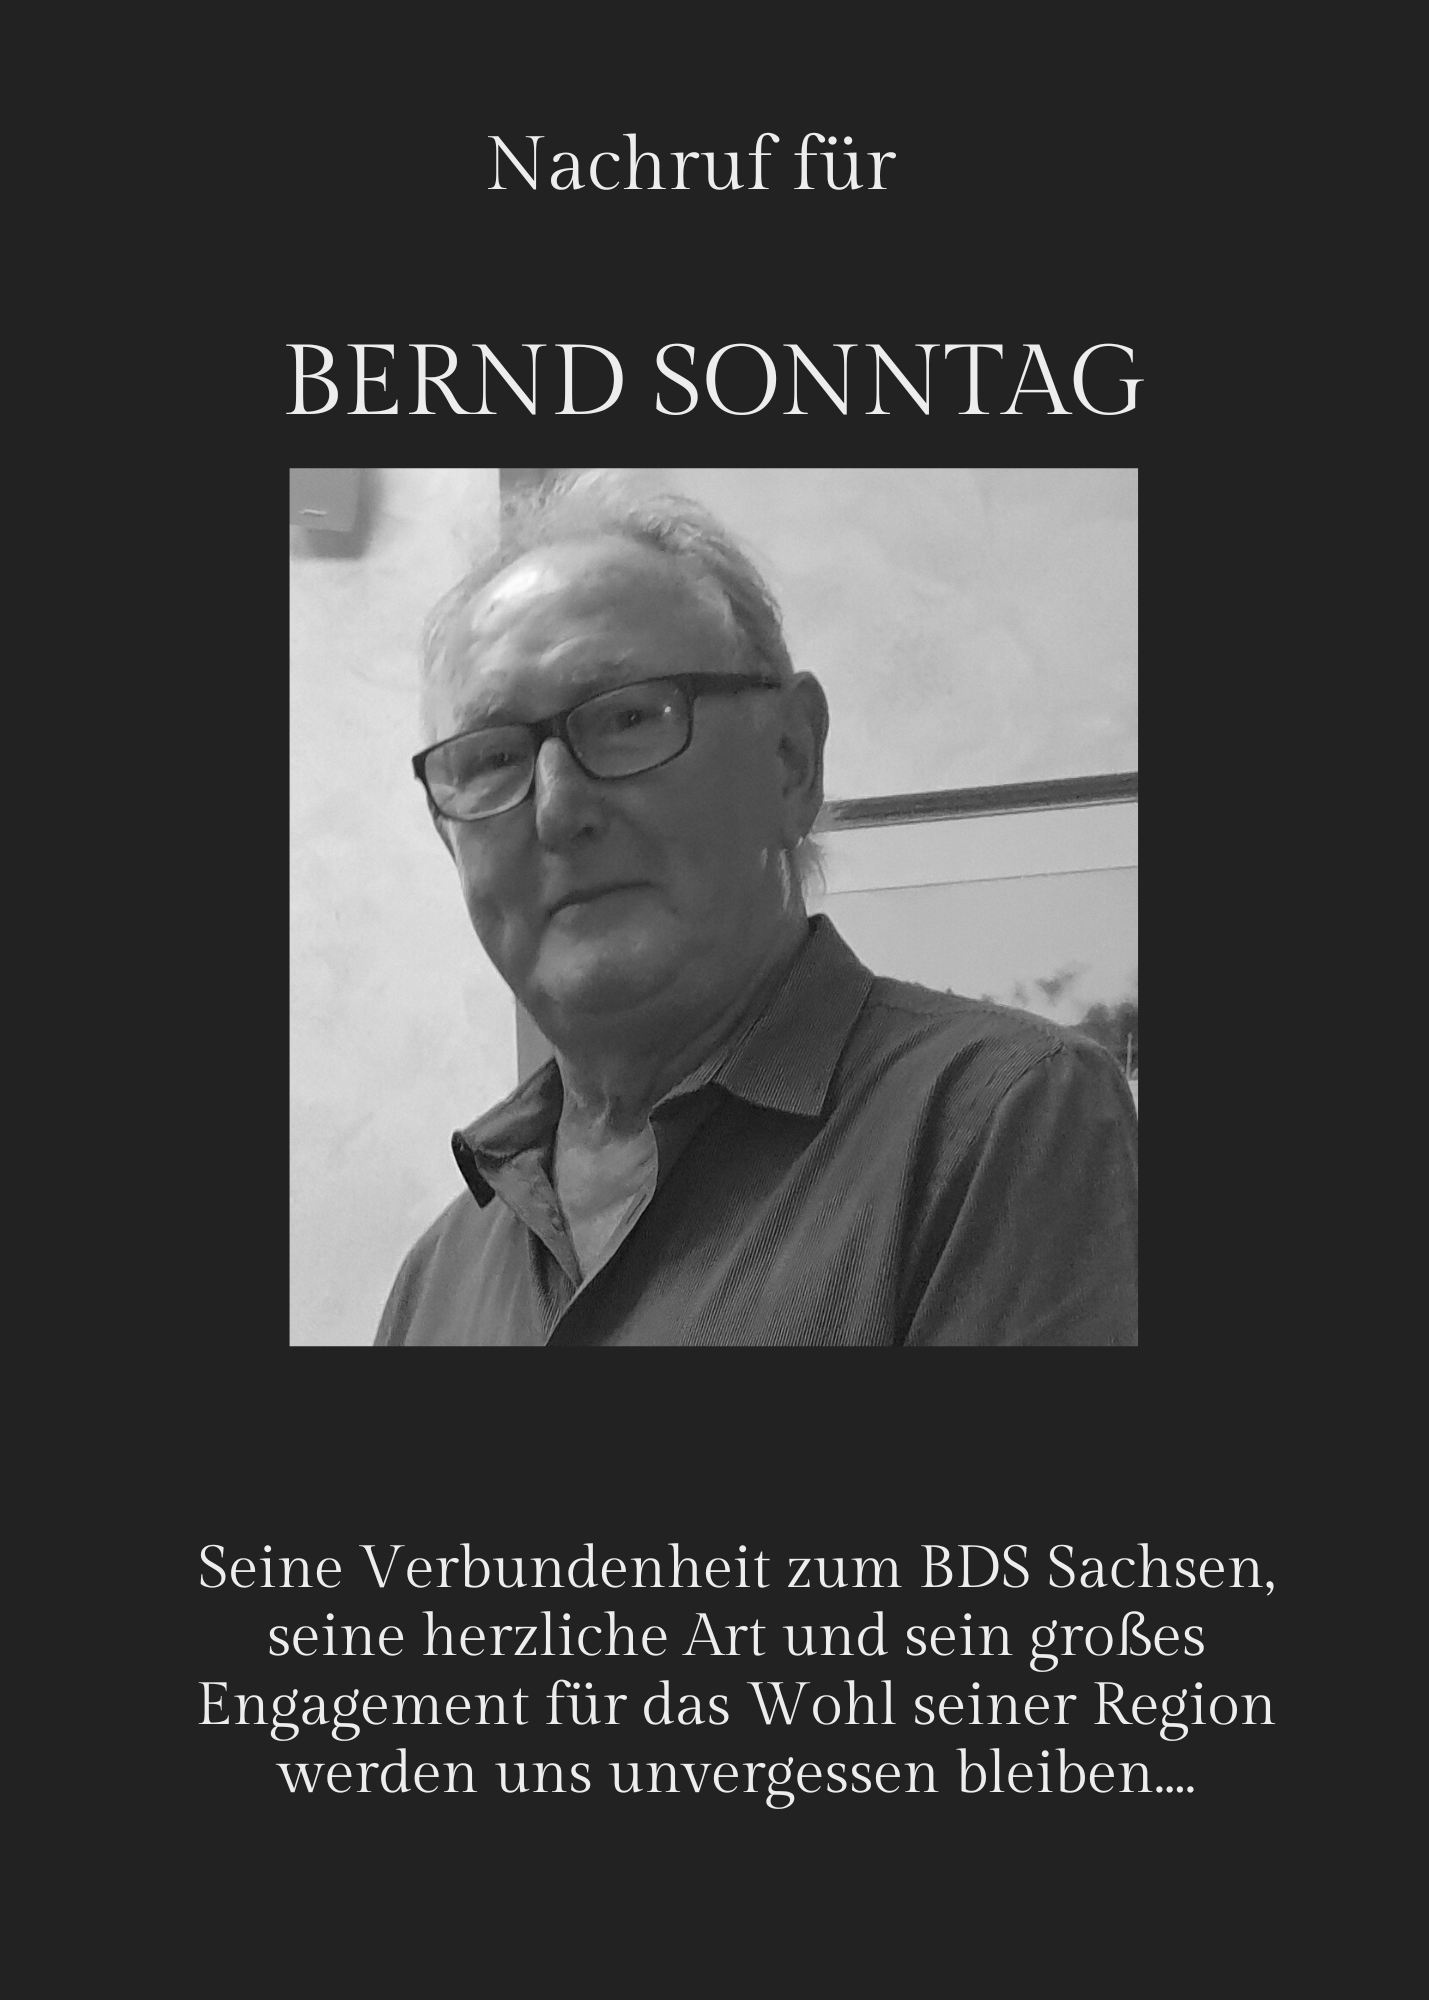 Featured image for “Abschied von Bernd Sonntag”